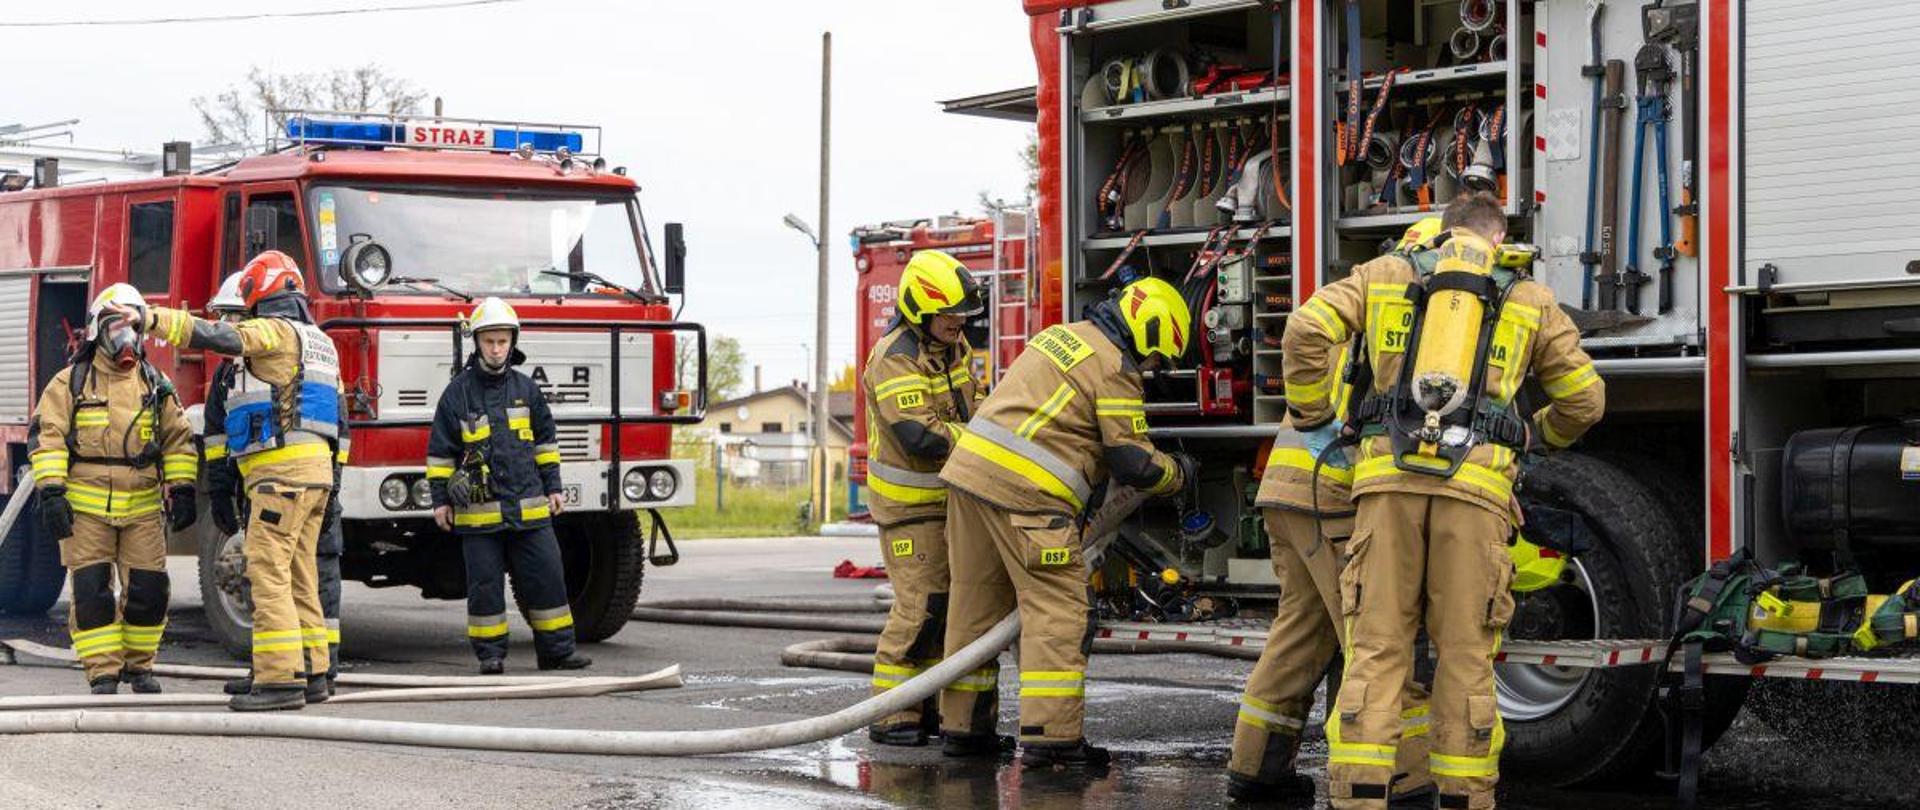 Strażacy jednostek ochotniczych straży pożarnych prowadzą działania przy pojazdach pożarniczych. Wśród strażaków jest jeden z Państwowej Straży Pożarnej. Strażacy w umundurowaniu specjalnym z hełmami na głowach.